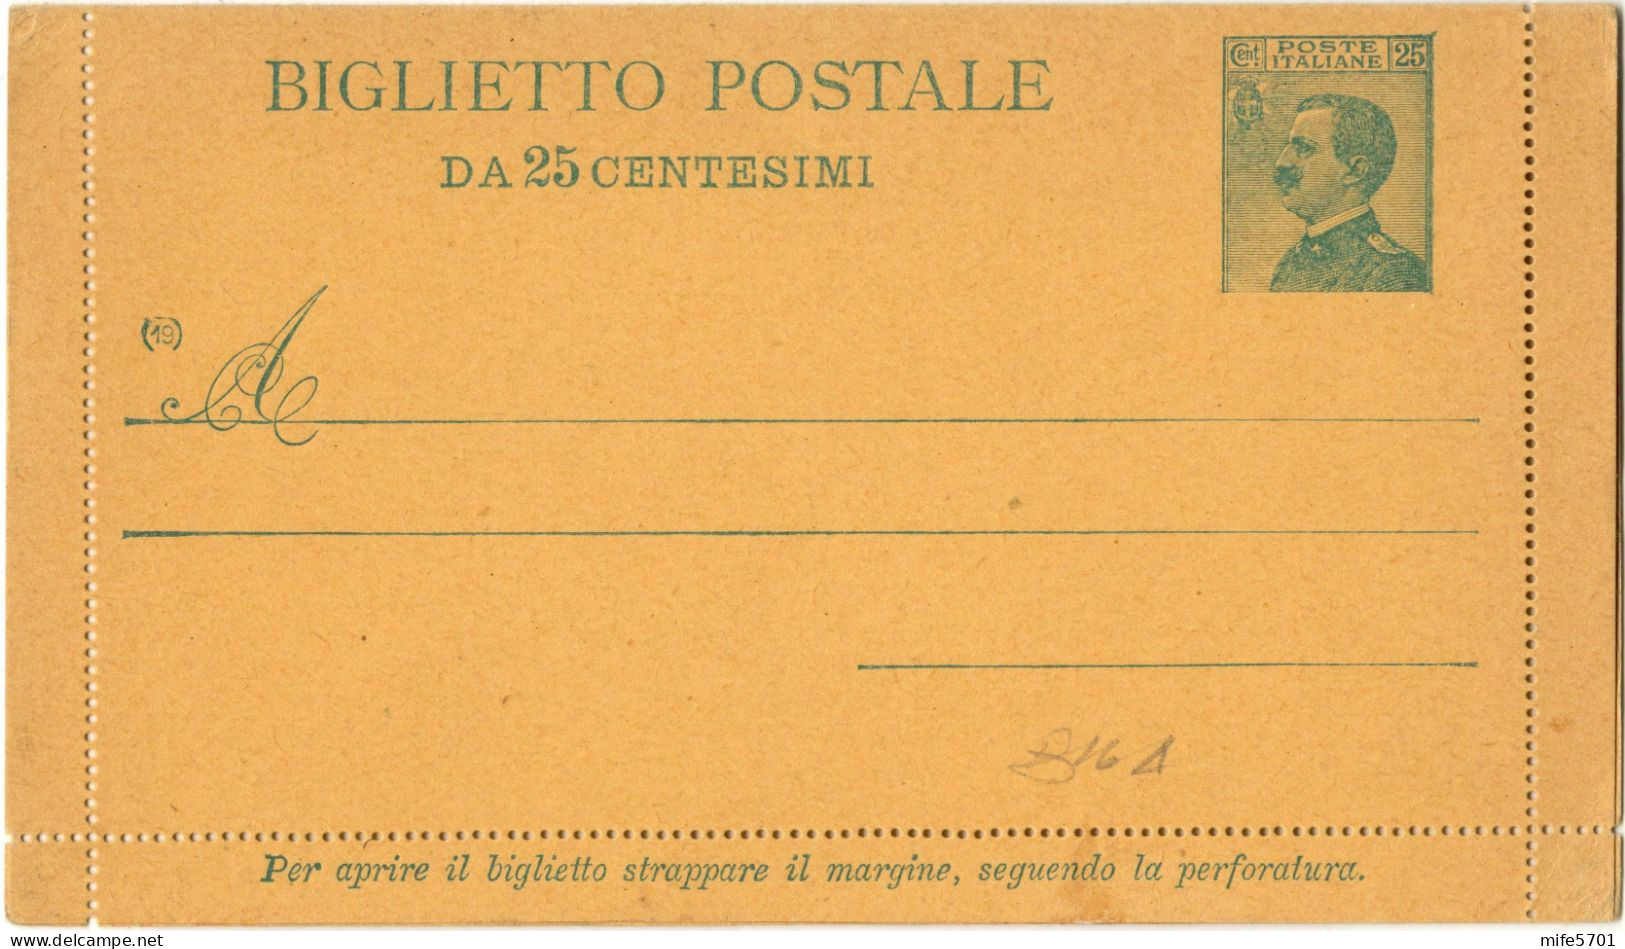 REGNO D'ITALIA B16A - 1919 BIGLIETTO POSTALE TIPO 'MICHETTI' DA C. 25 V.E.III VOLTO A SINISTRA - NUOVO FILAGRANO B16A - Entero Postal